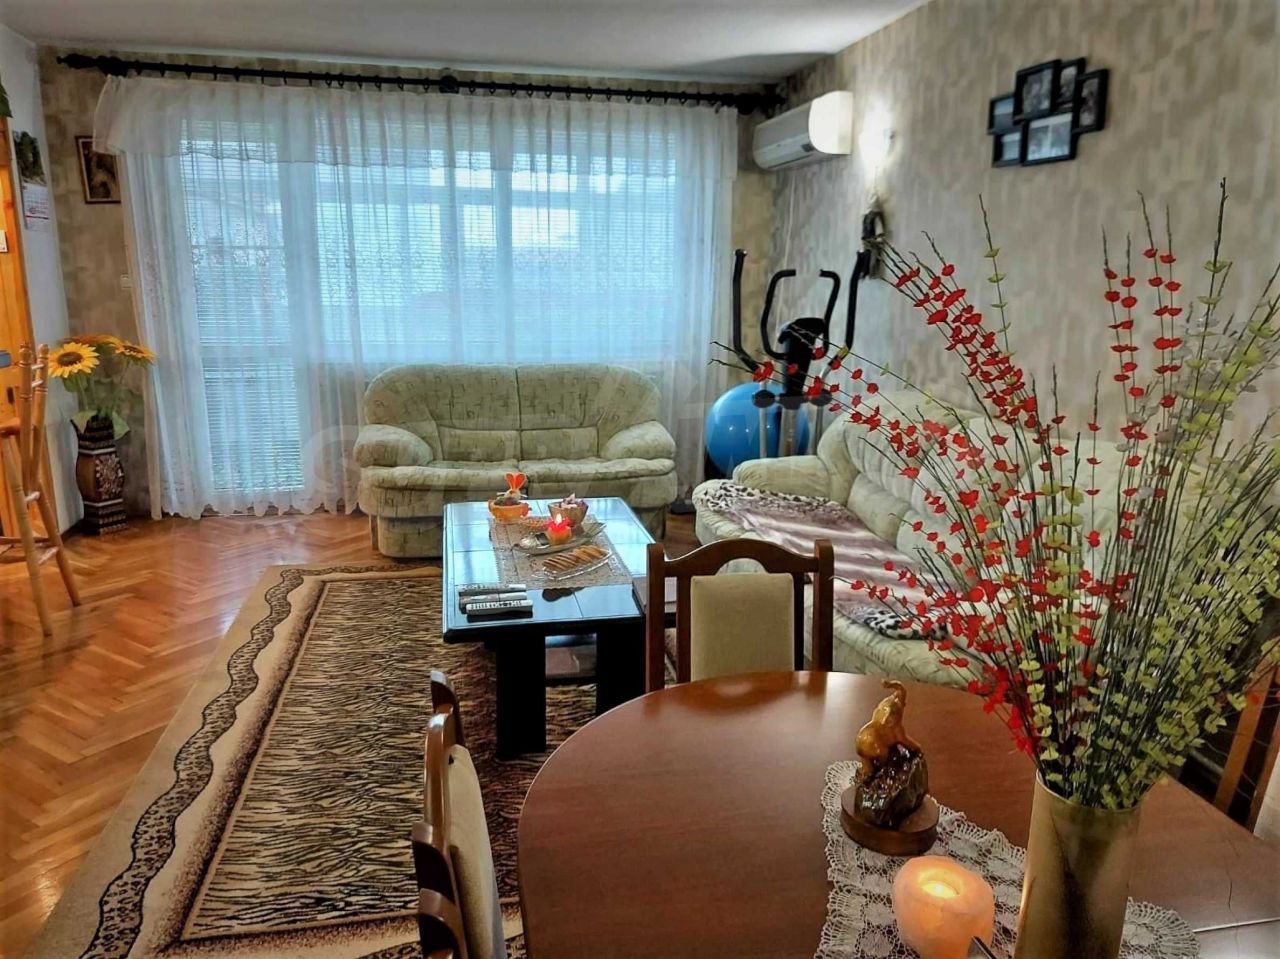 Apartment in Ruse, Bulgaria, 102 sq.m - picture 1